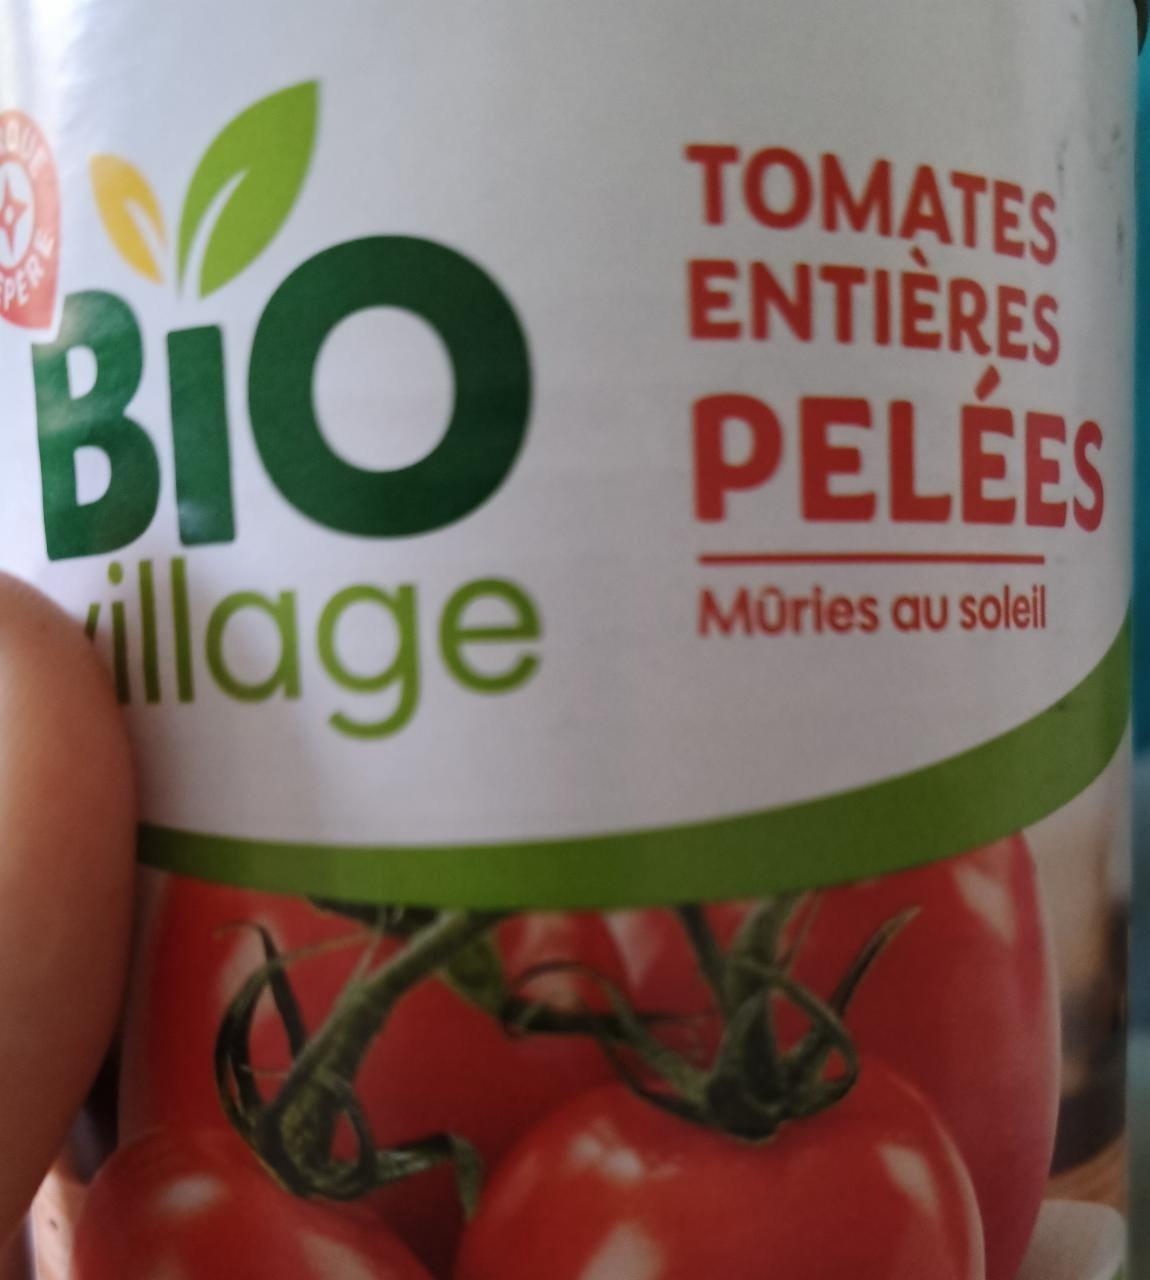 Fotografie - Tomates Entiéres Pelées Bio Village